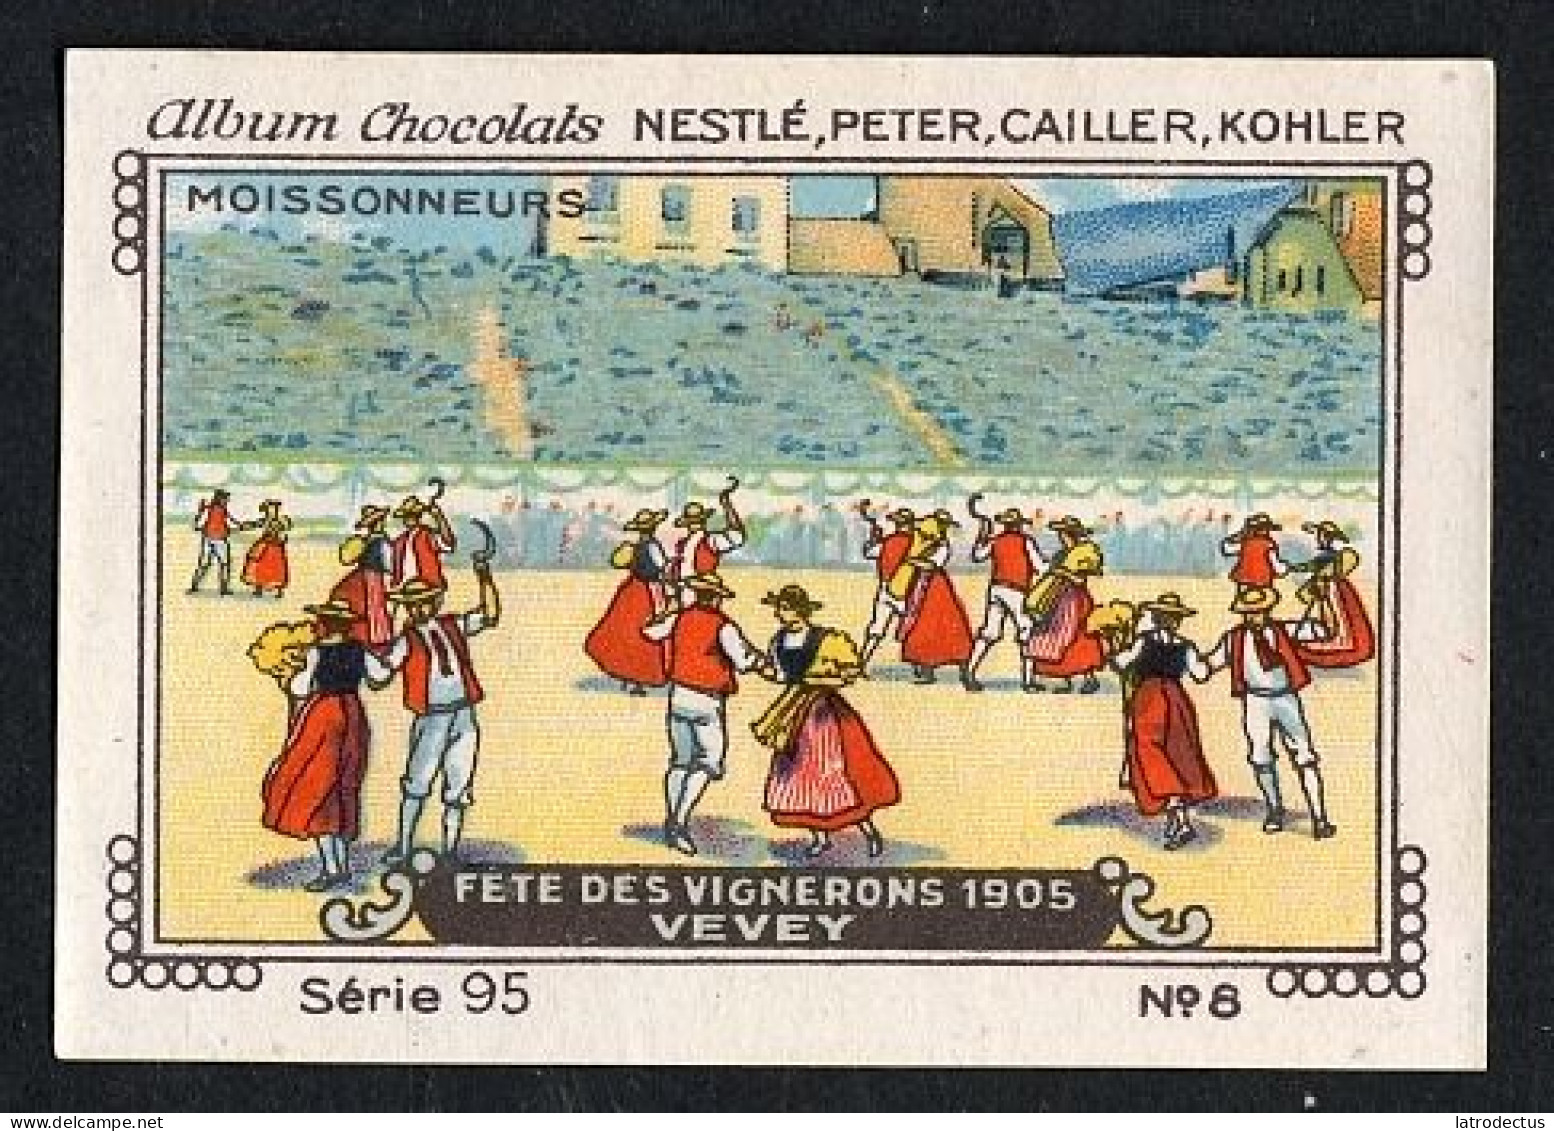 Nestlé - 95 - Fête Des Vignerons 1905 Vevey, Suisse - 8 - Nestlé